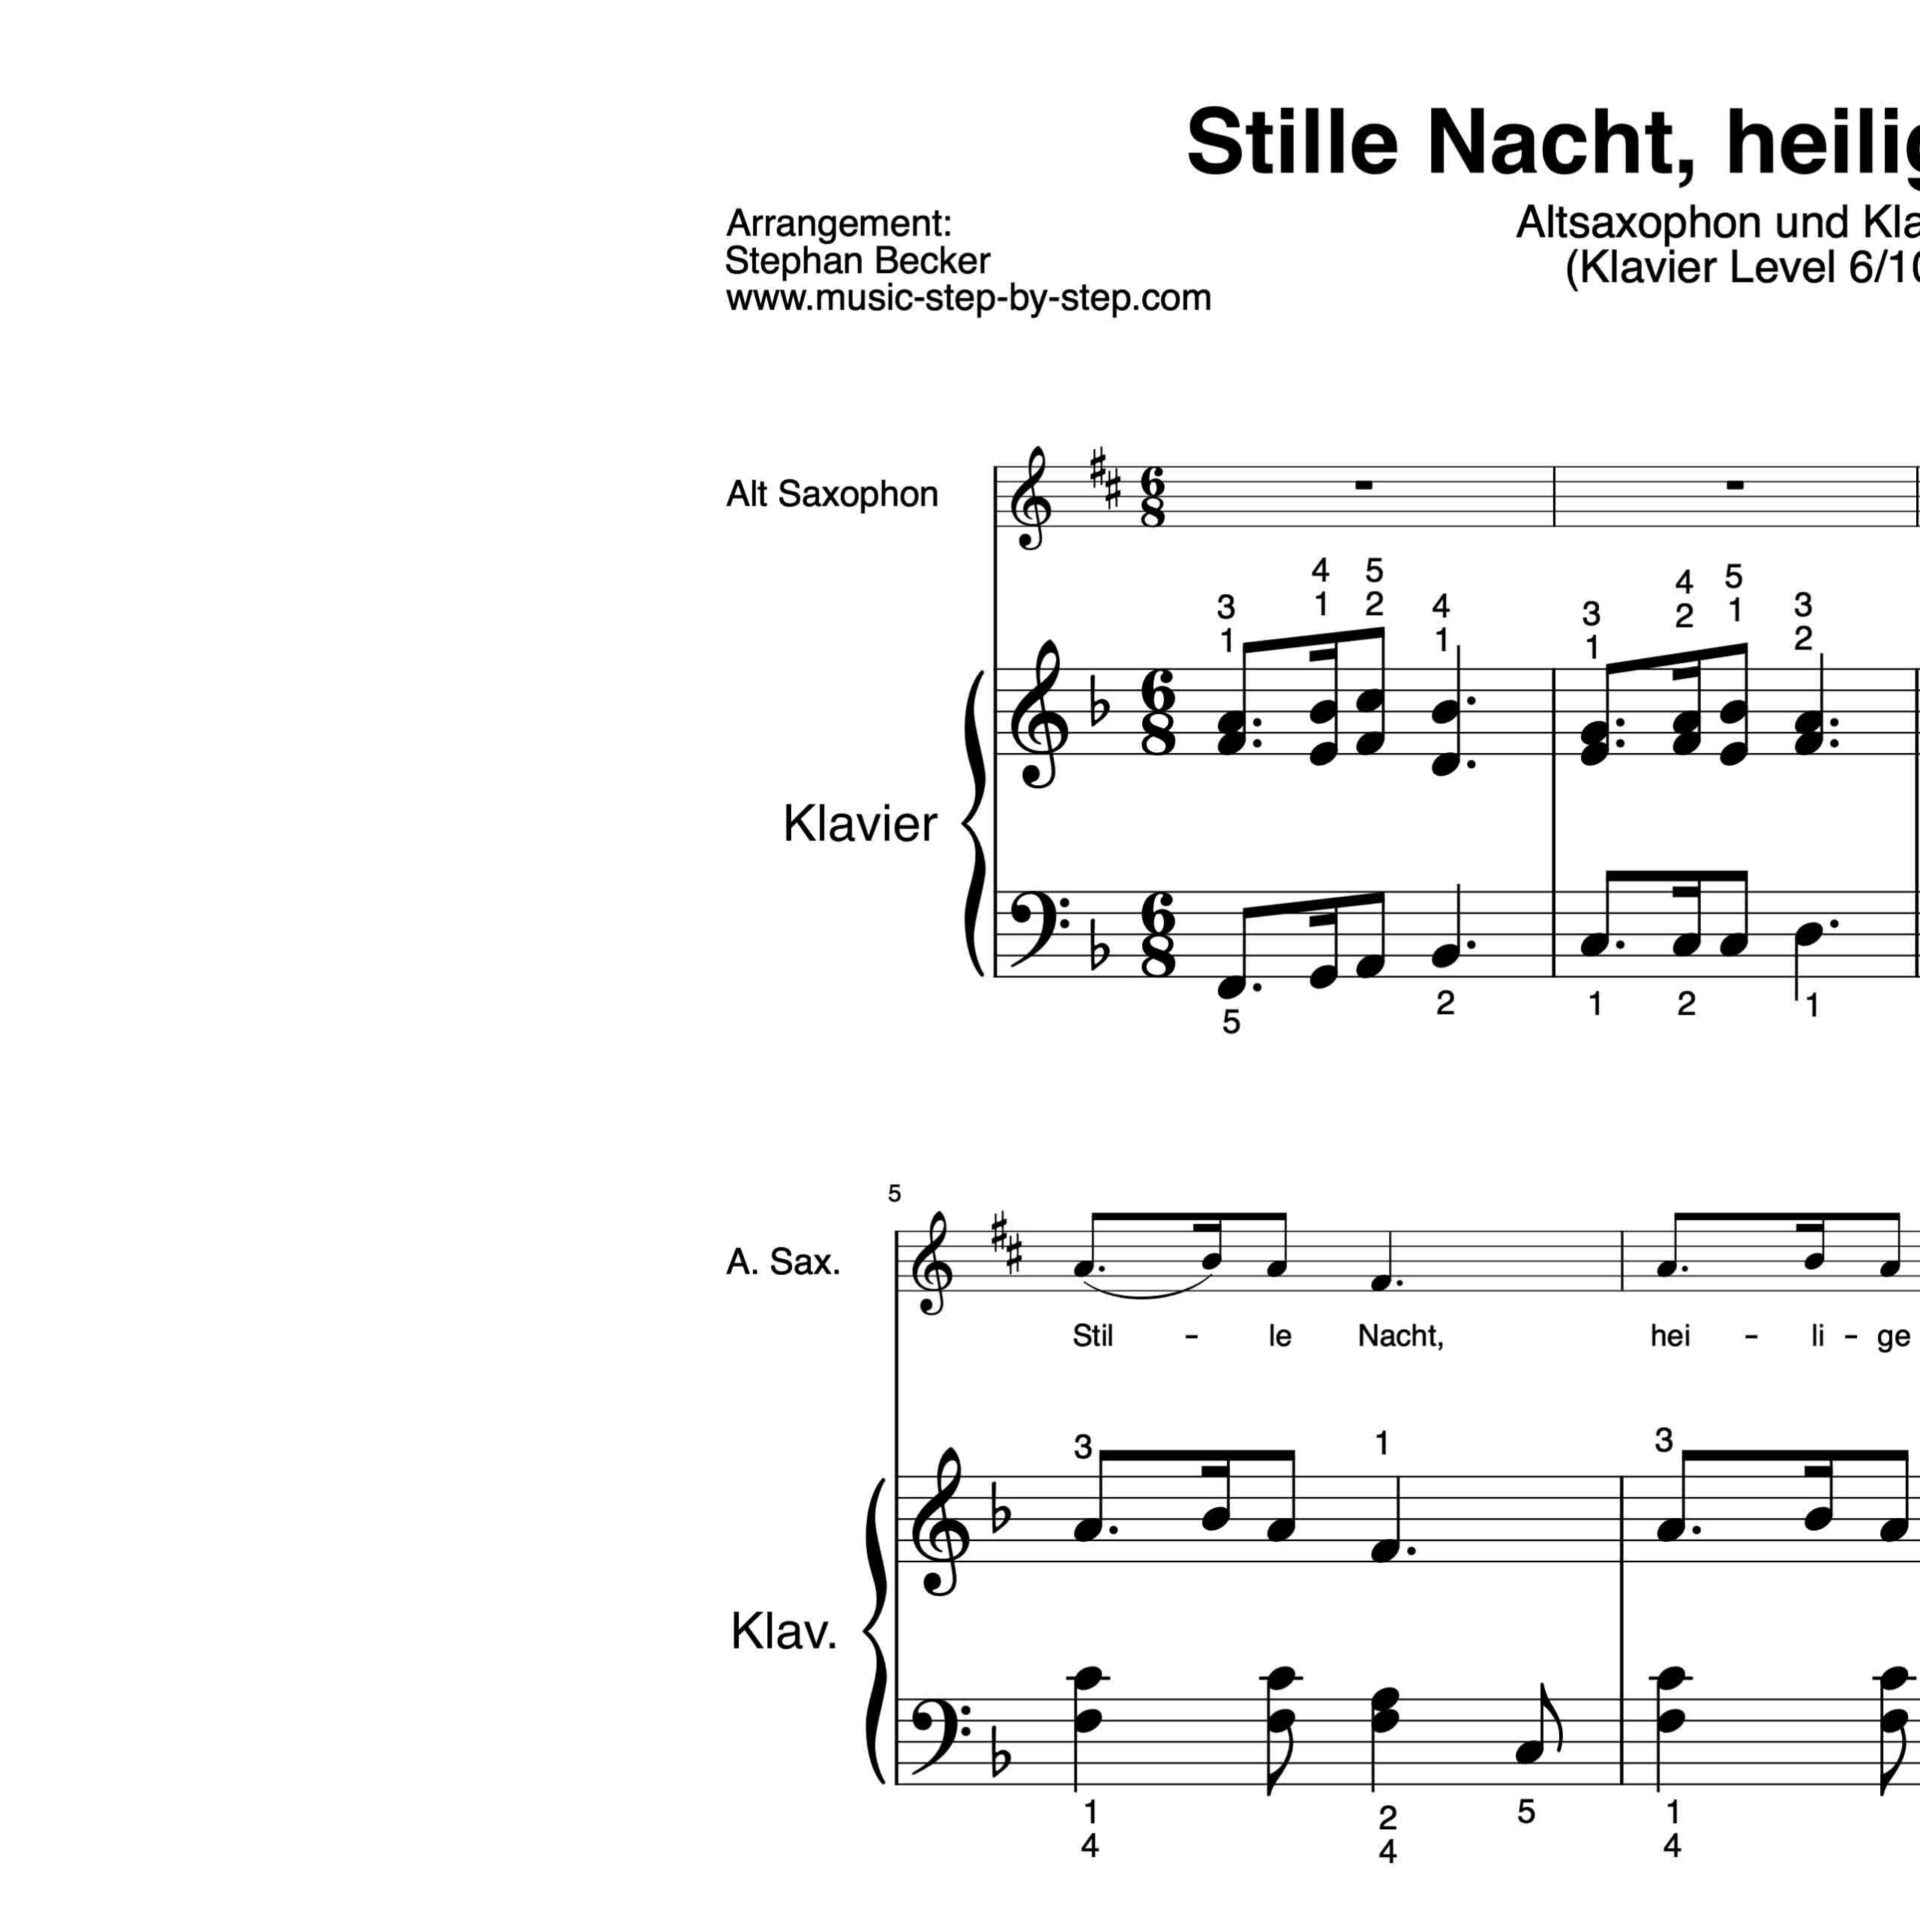 “Stille Nacht, heilige Nacht” für Altsaxophon (Klavierbegleitung Level 6/10) | inkl. Aufnahme, Text und Playalong by music-step-by-step